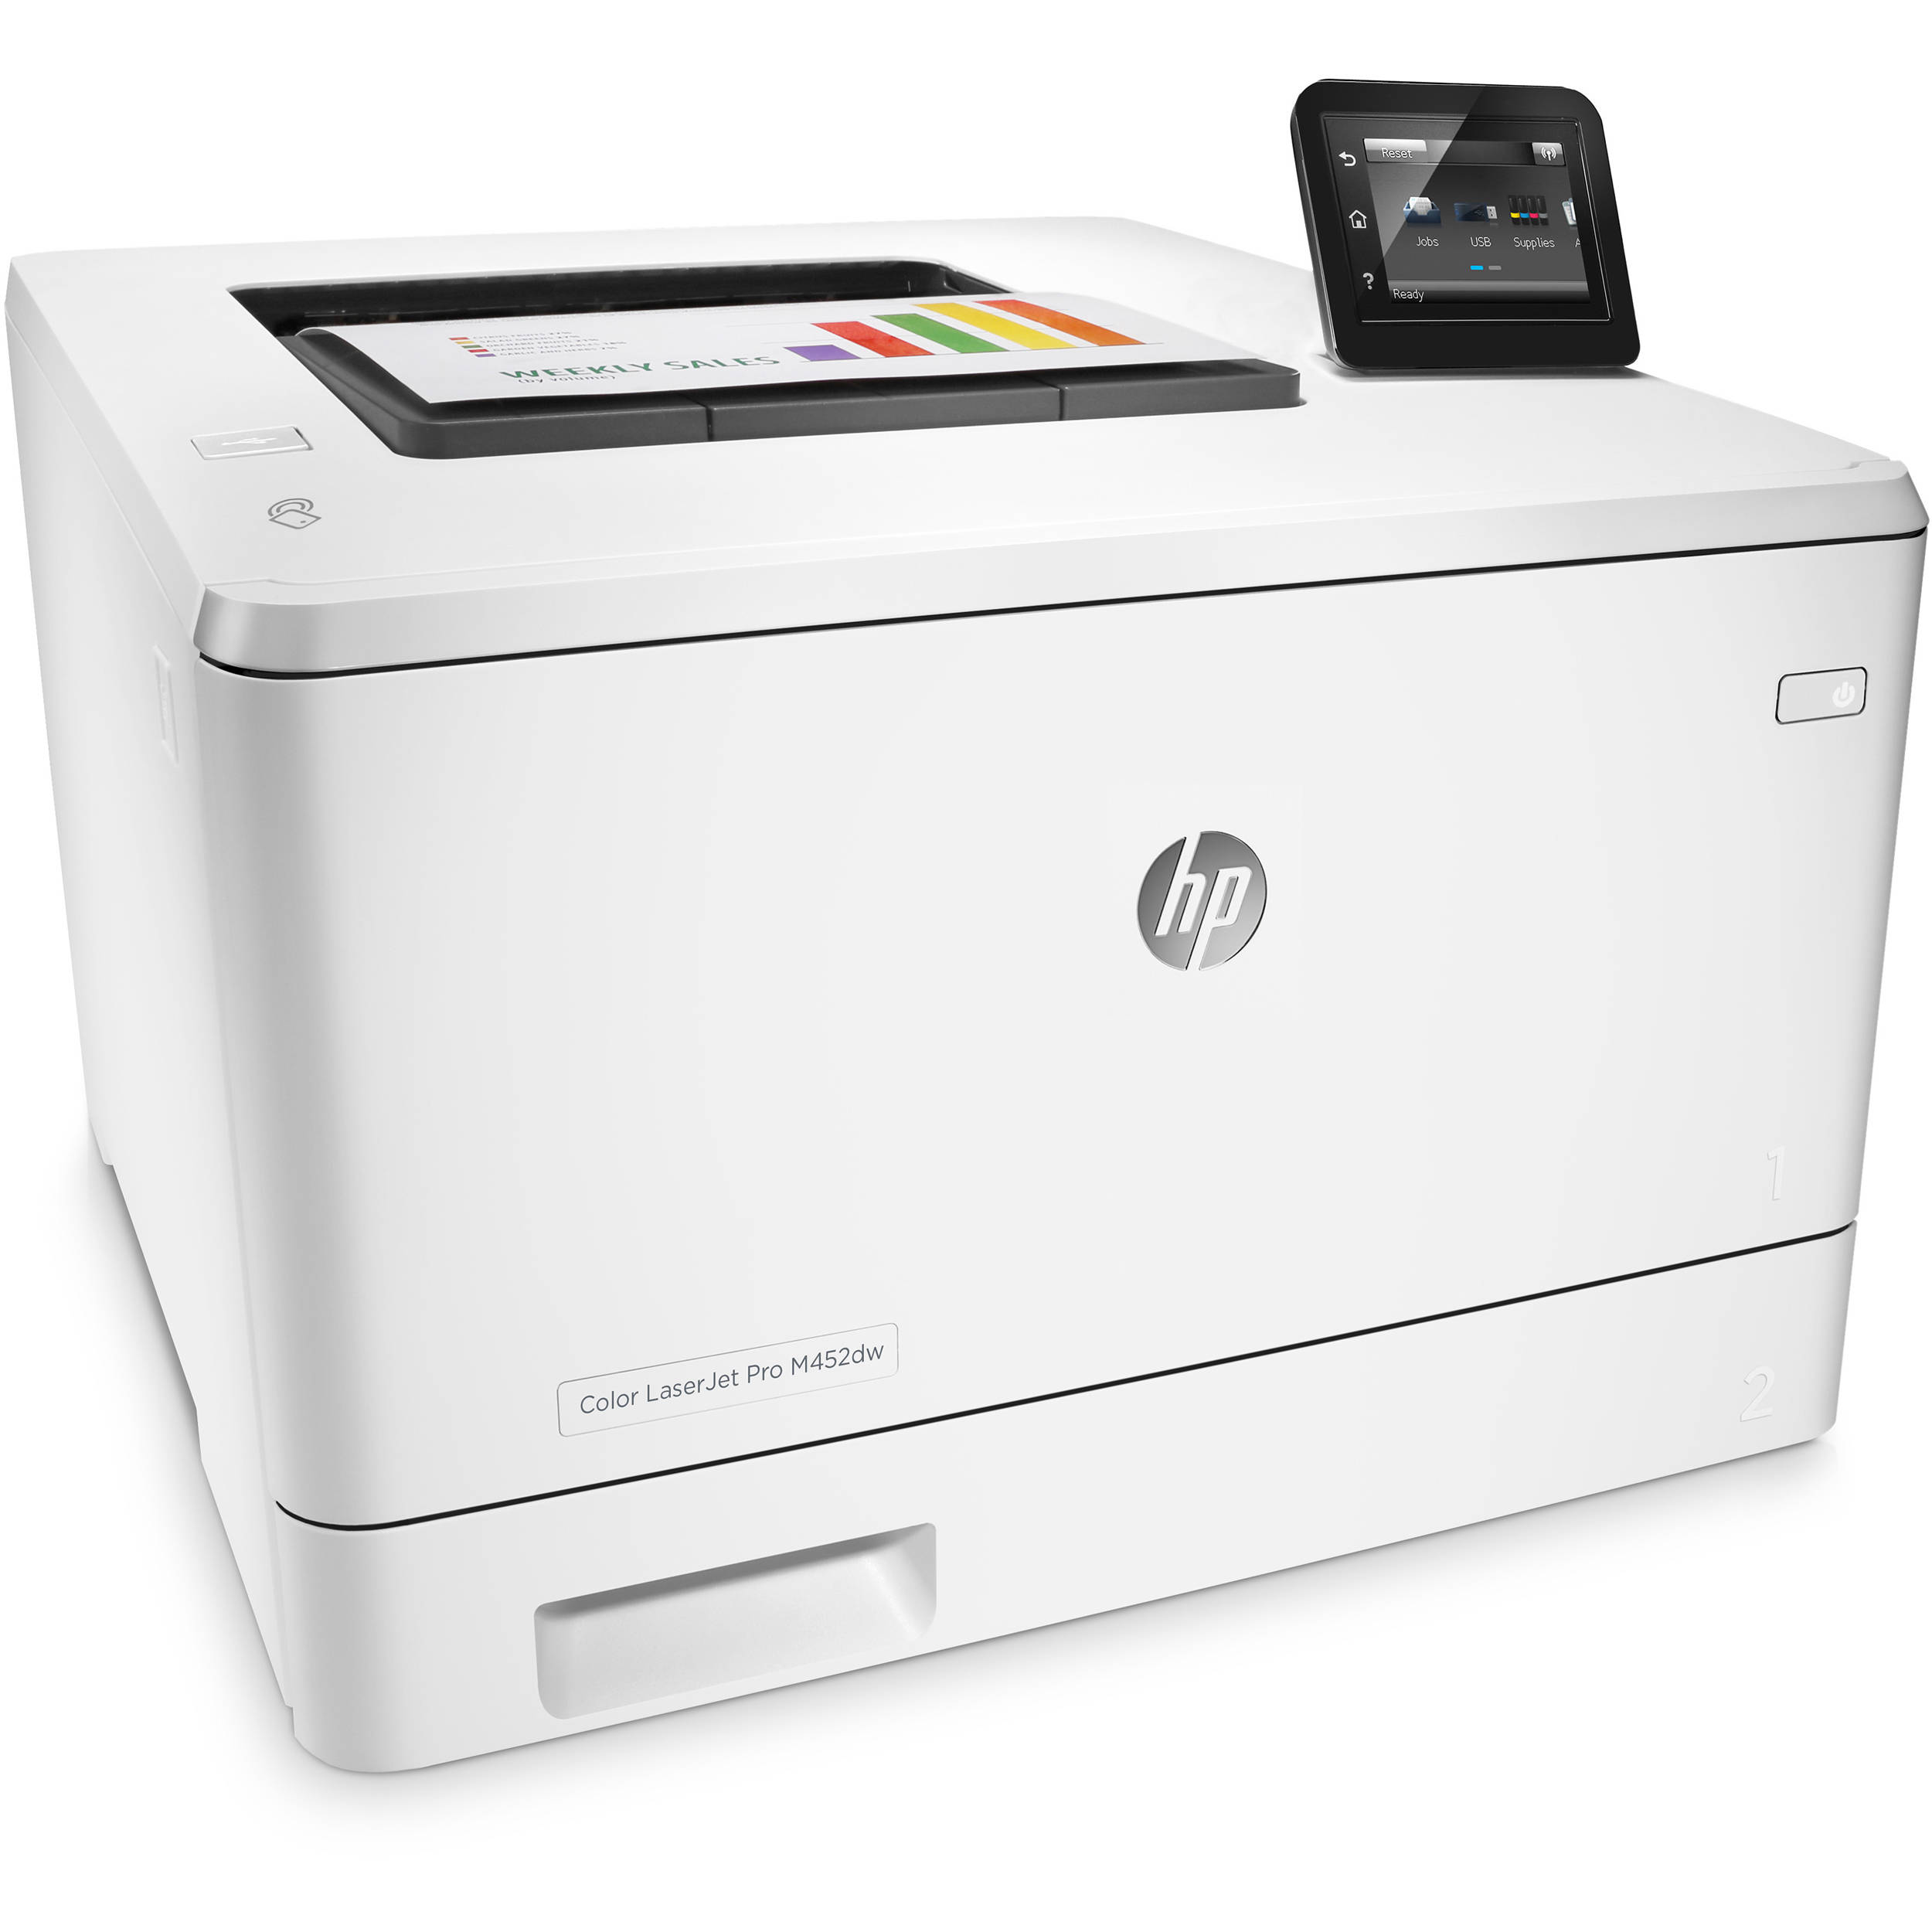 HP Color LaserJet Pro M452dw / M452nw